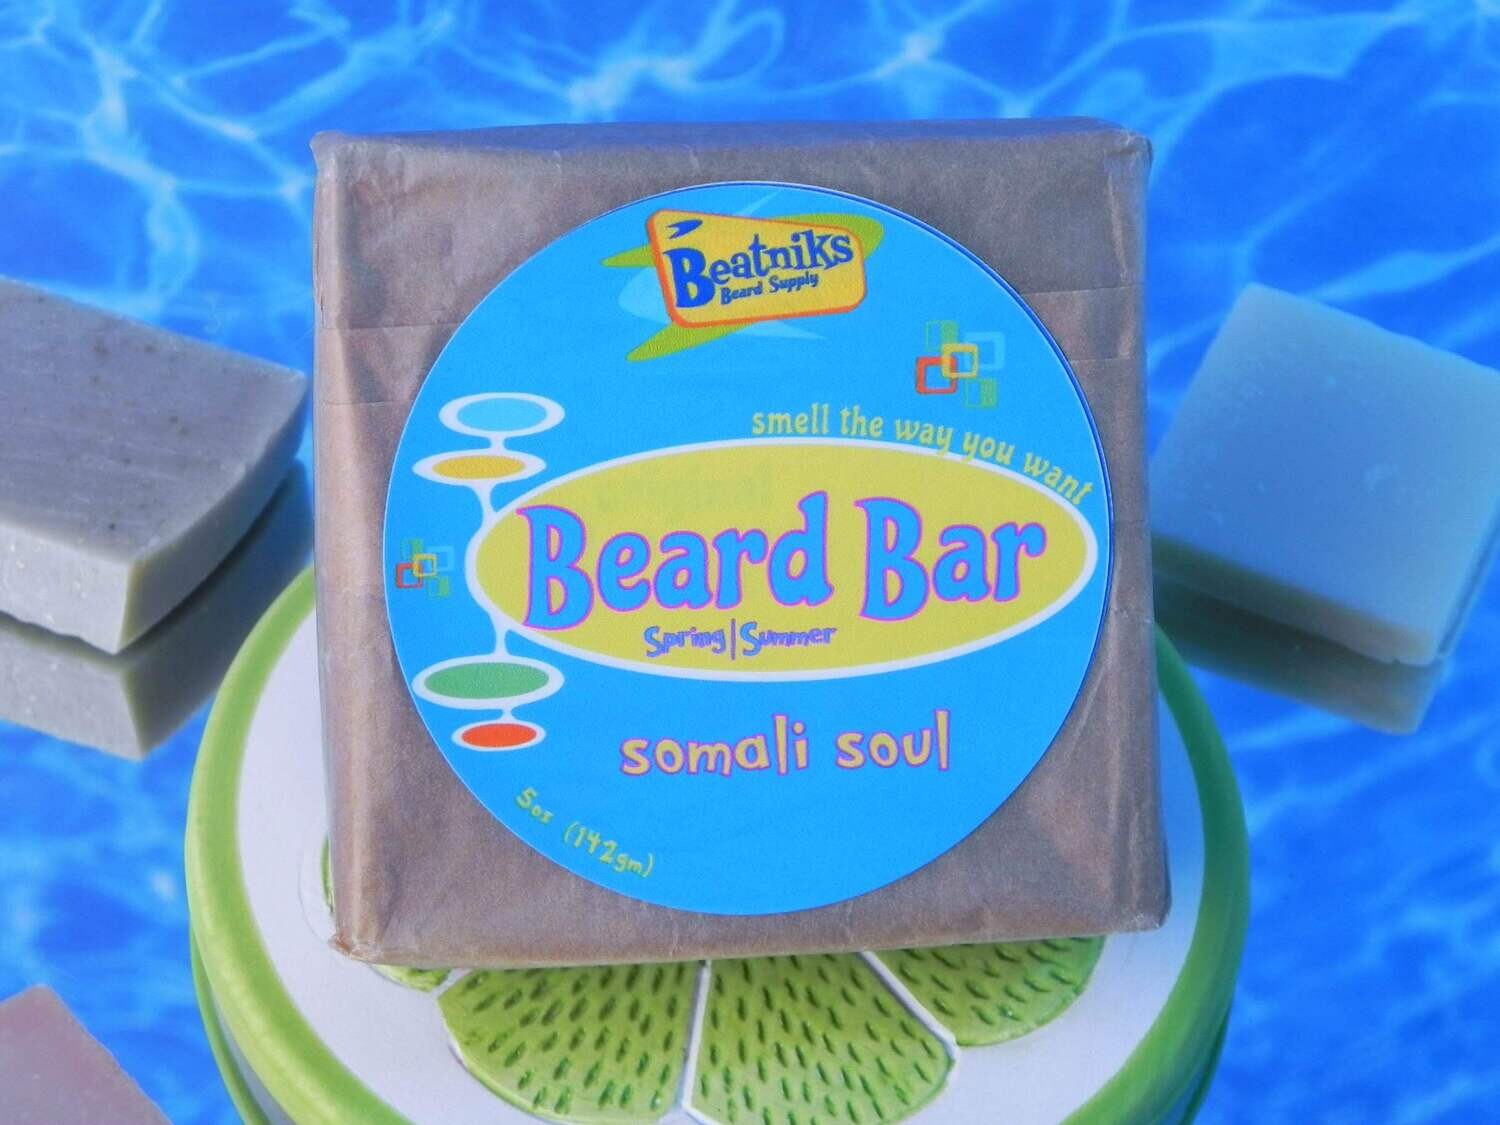 SOMALI SOUL | Beard Bar